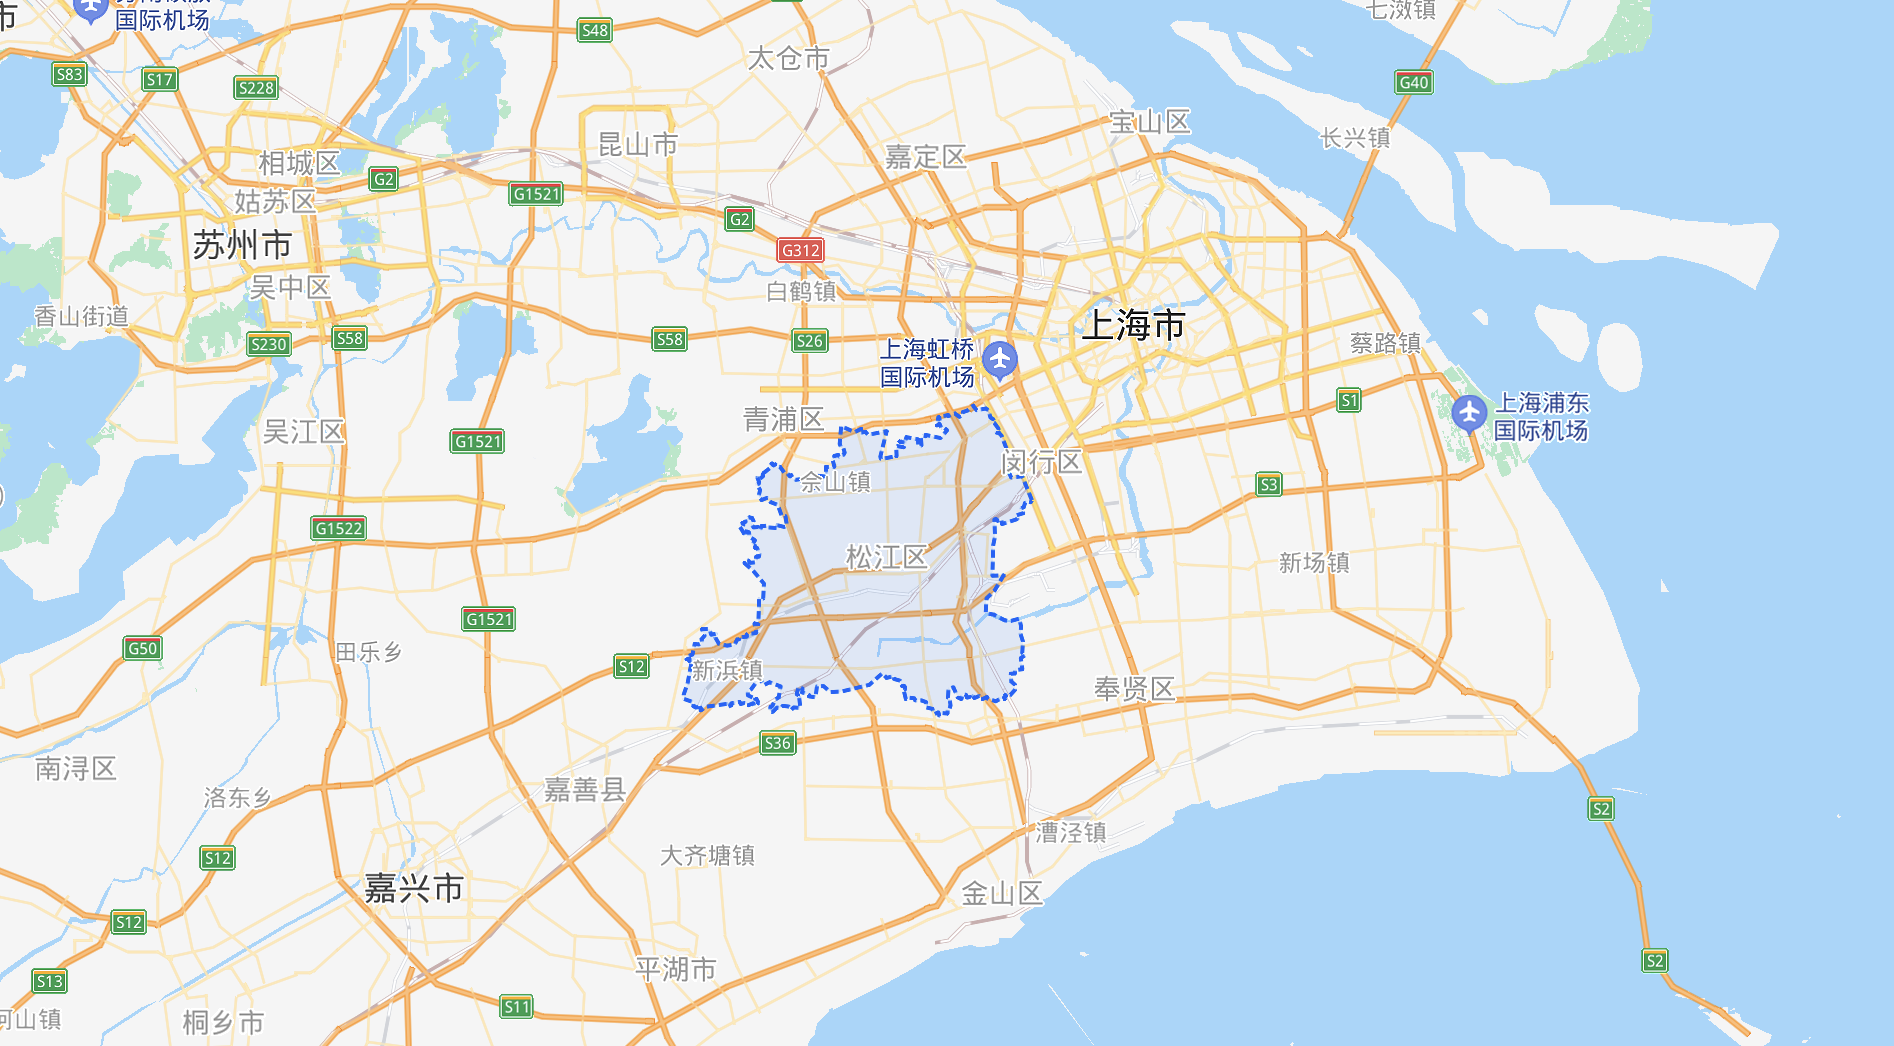 上海松江区中心医院一人新冠检测异常相关人员正在排查中目前情况如何